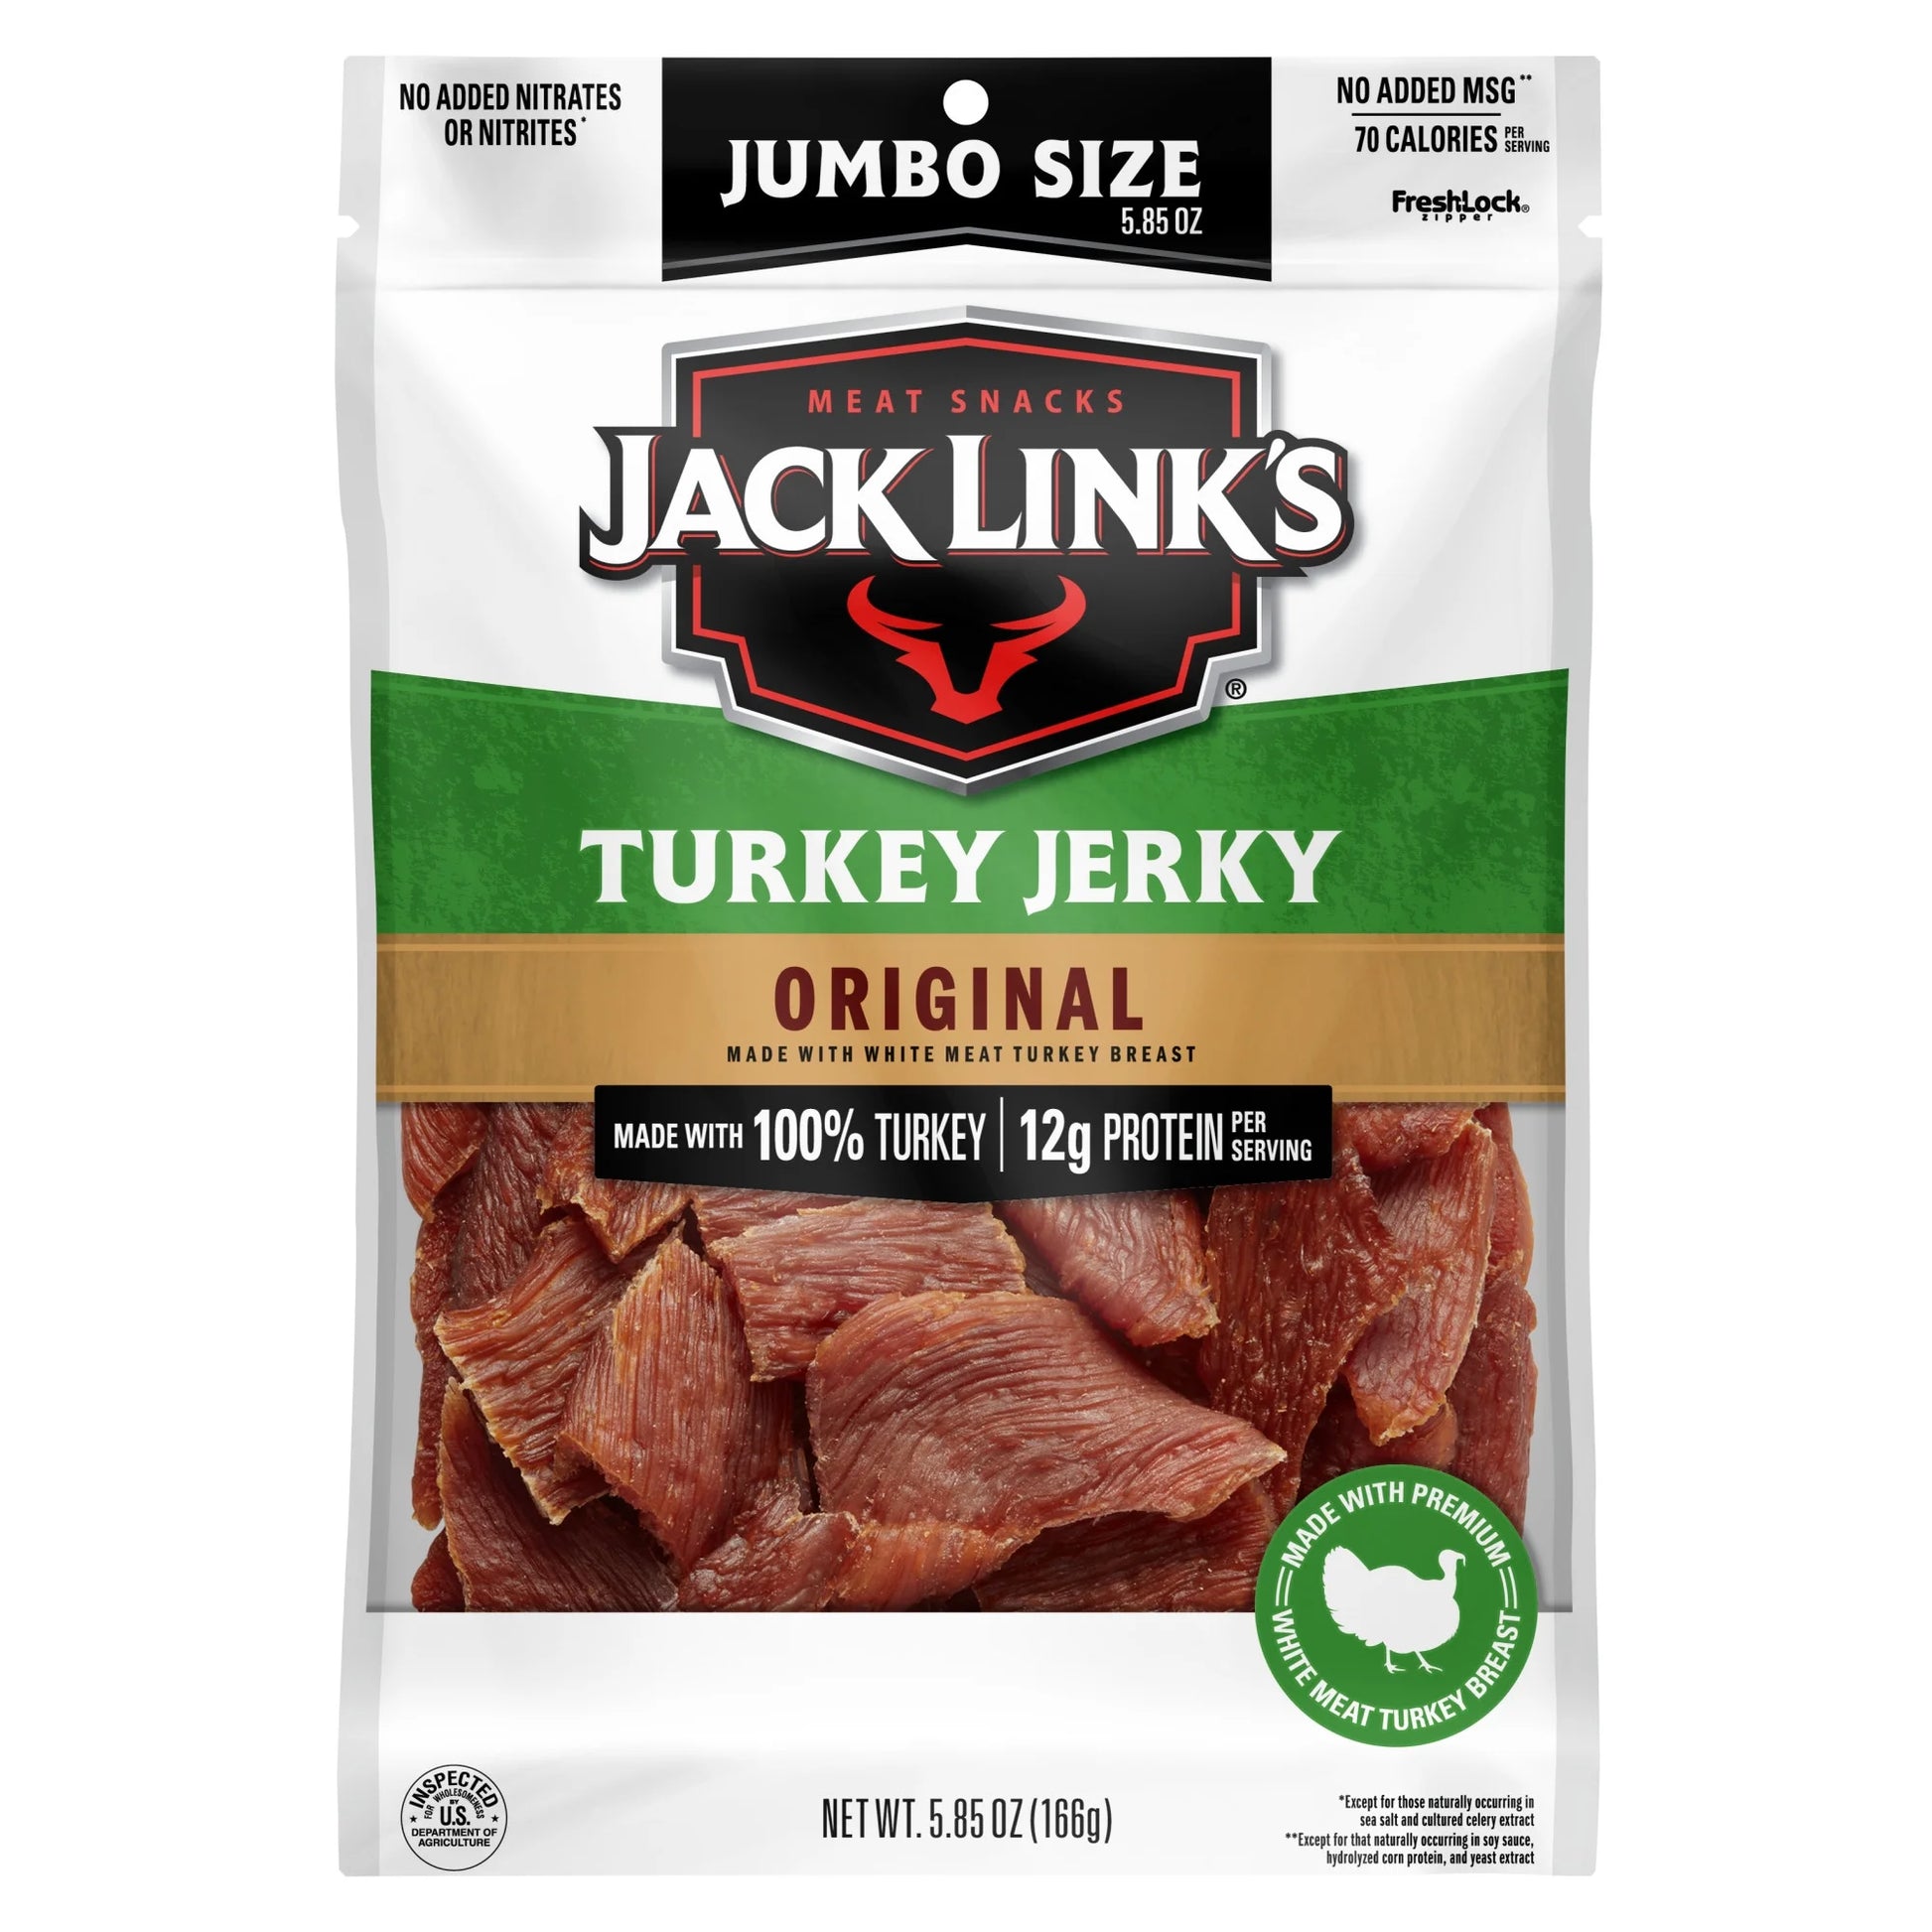 Original Turkey Jerky 5.85 Oz Resealable Bag